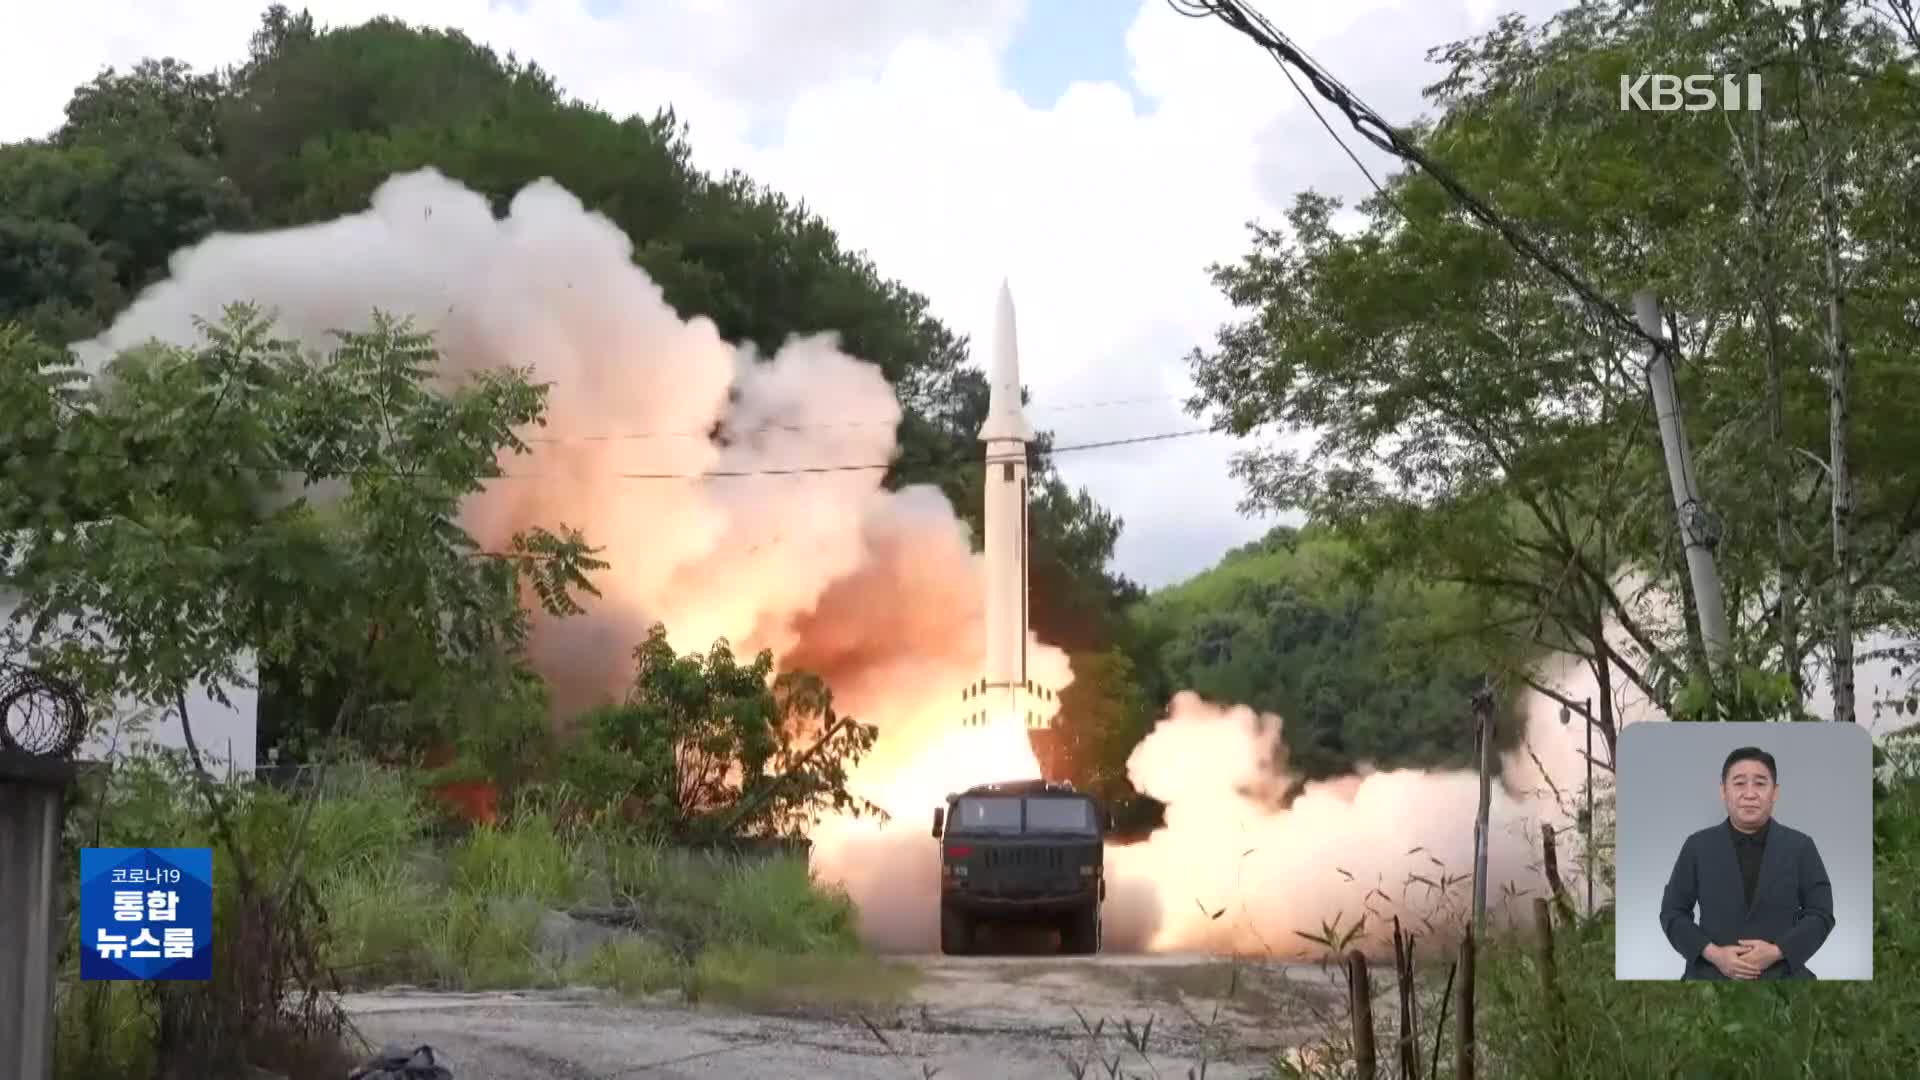 中, 타이완 상공 가로질러 미사일 발사…일부 日 EEZ에 낙하